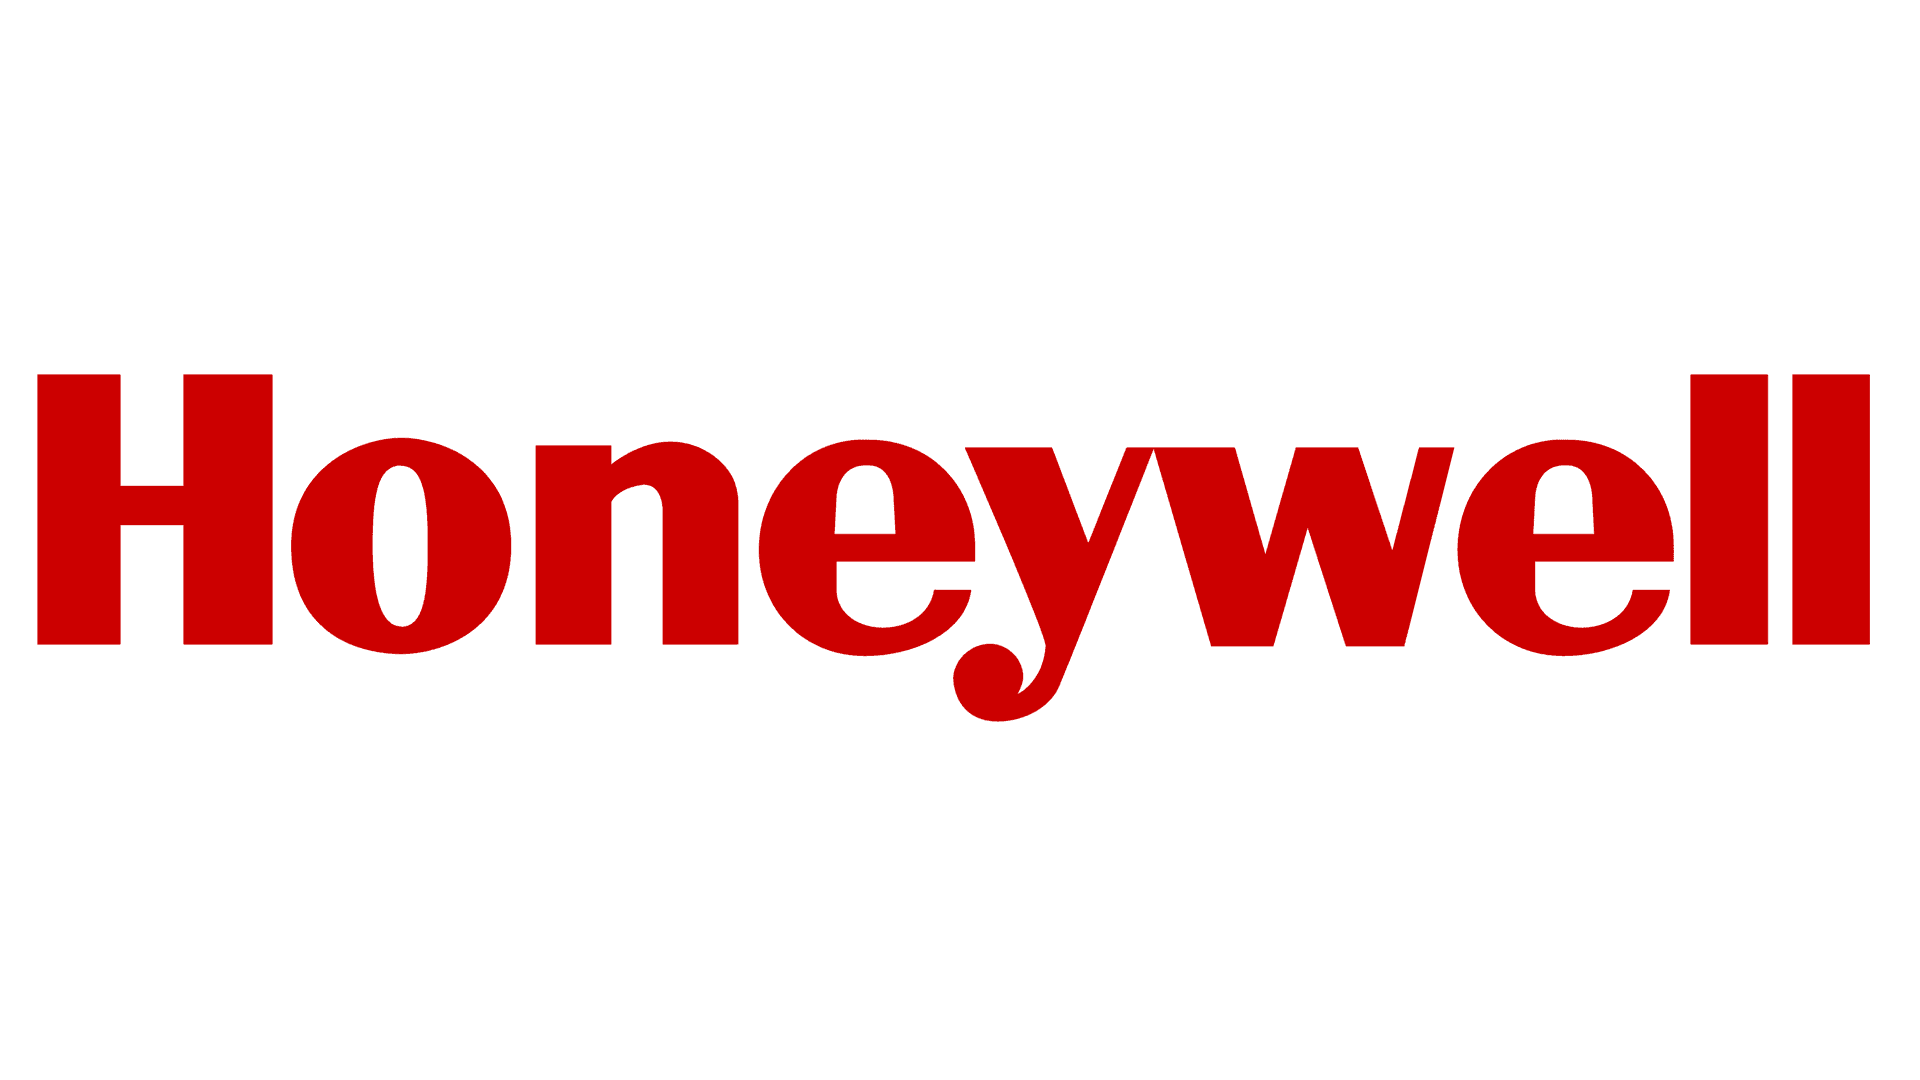 Honeywell 